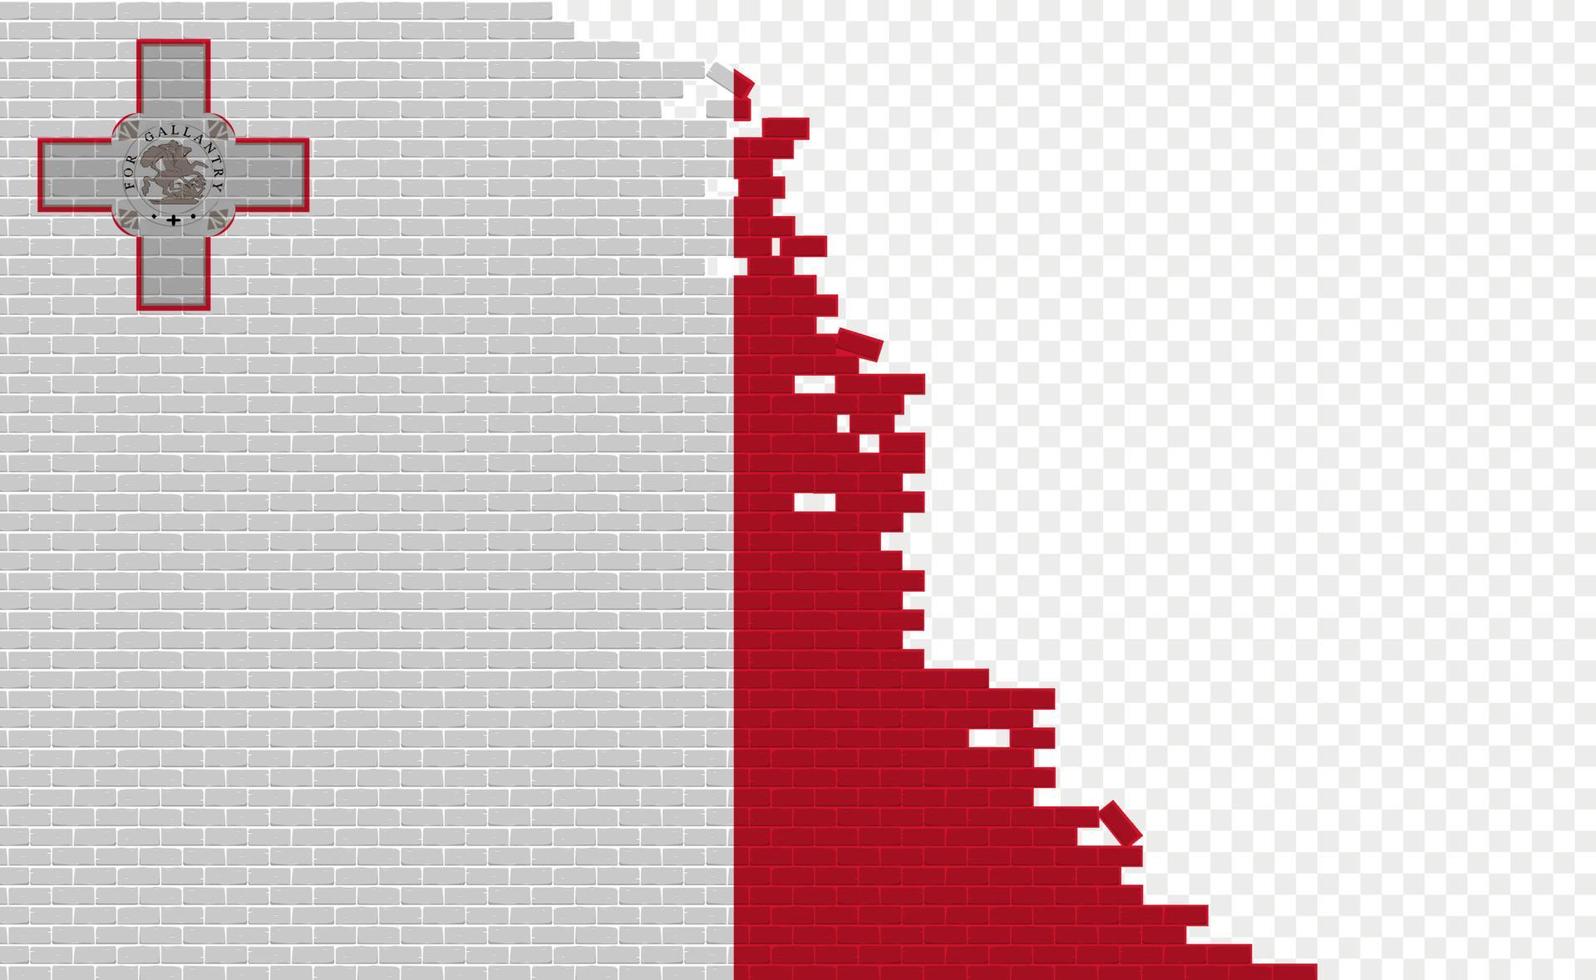 drapeau de malte sur le mur de briques cassées. champ de drapeau vide d'un autre pays. comparaison de pays. édition facile et vecteur en groupes.